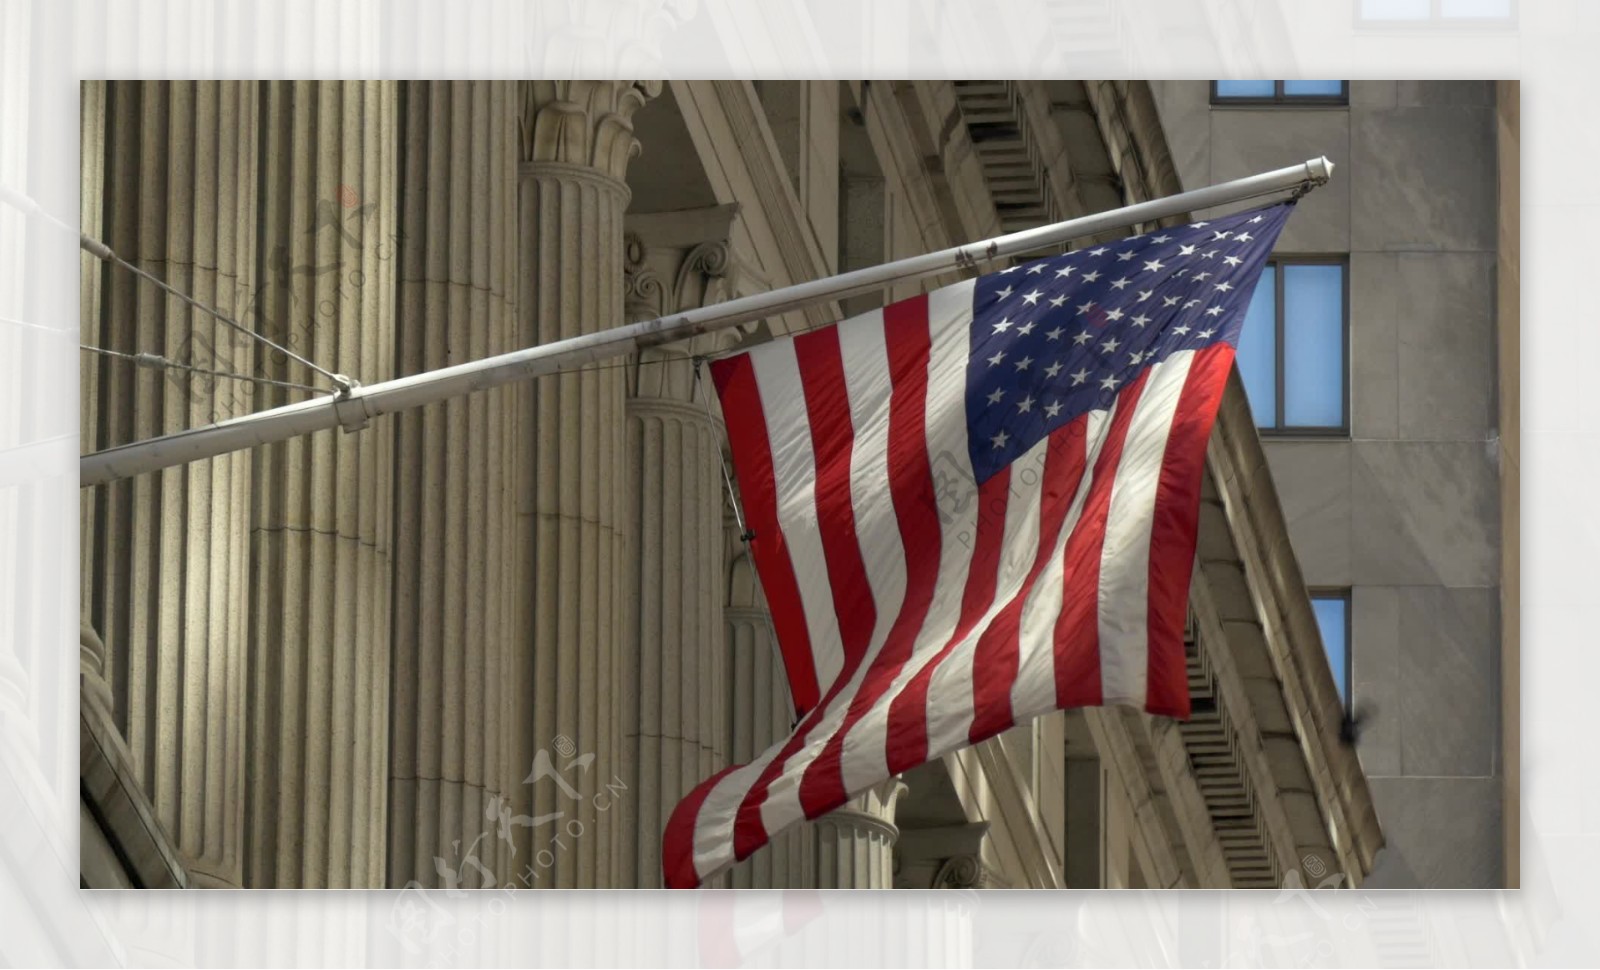 美国国旗飘扬在纽约华尔街